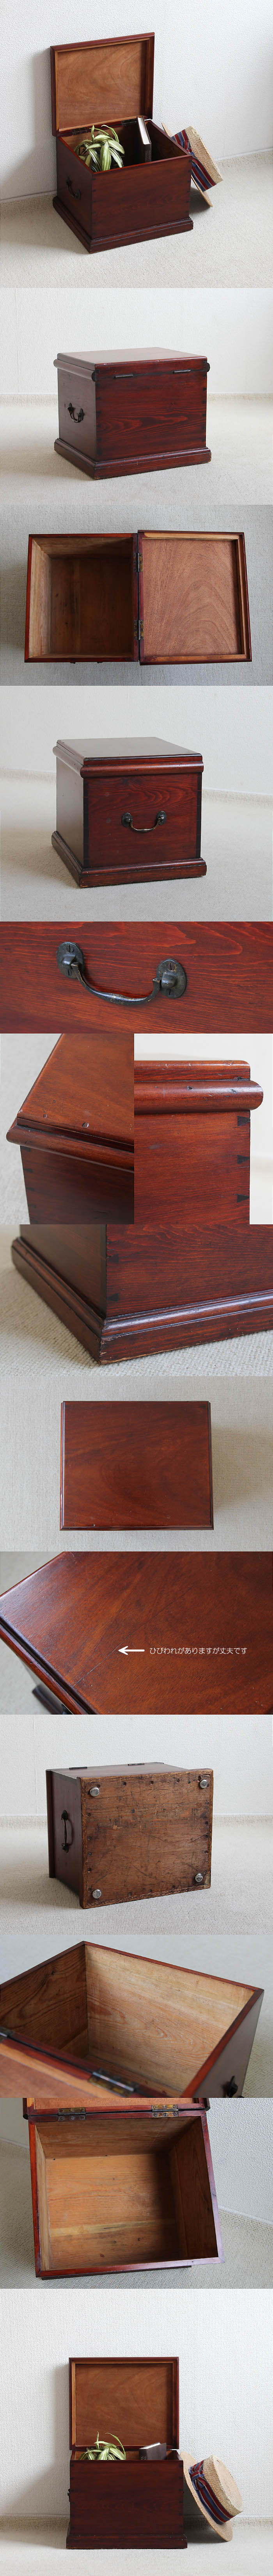 イギリス アンティーク オールドパインボックス 収納 木箱 ケース 古木 家具「ツールボックス」V-993